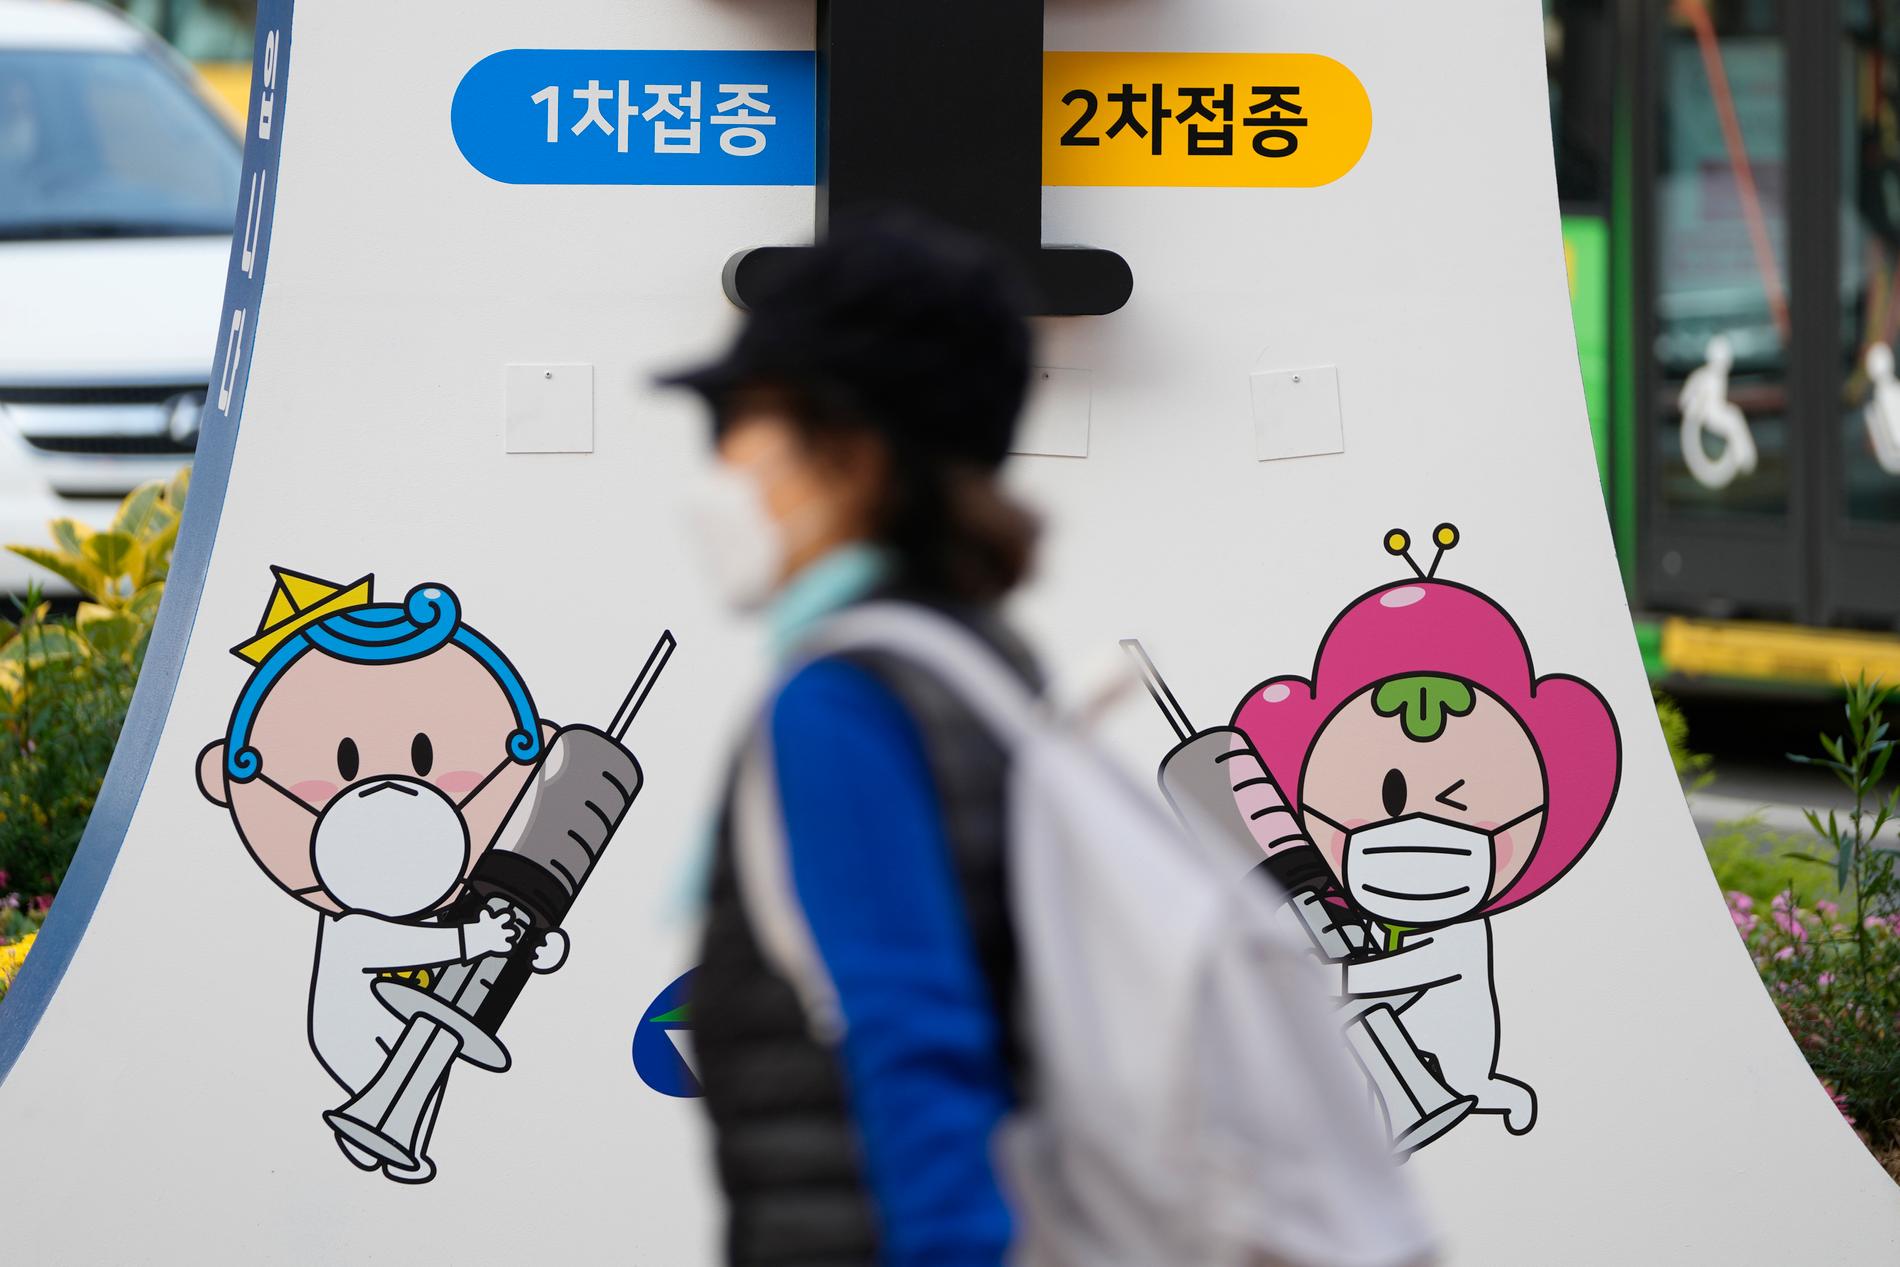 Tusentals kameror, AI och ansiktsigenkänning kommer att testas i Sydkorea för att smittspåra. Arkivbild.